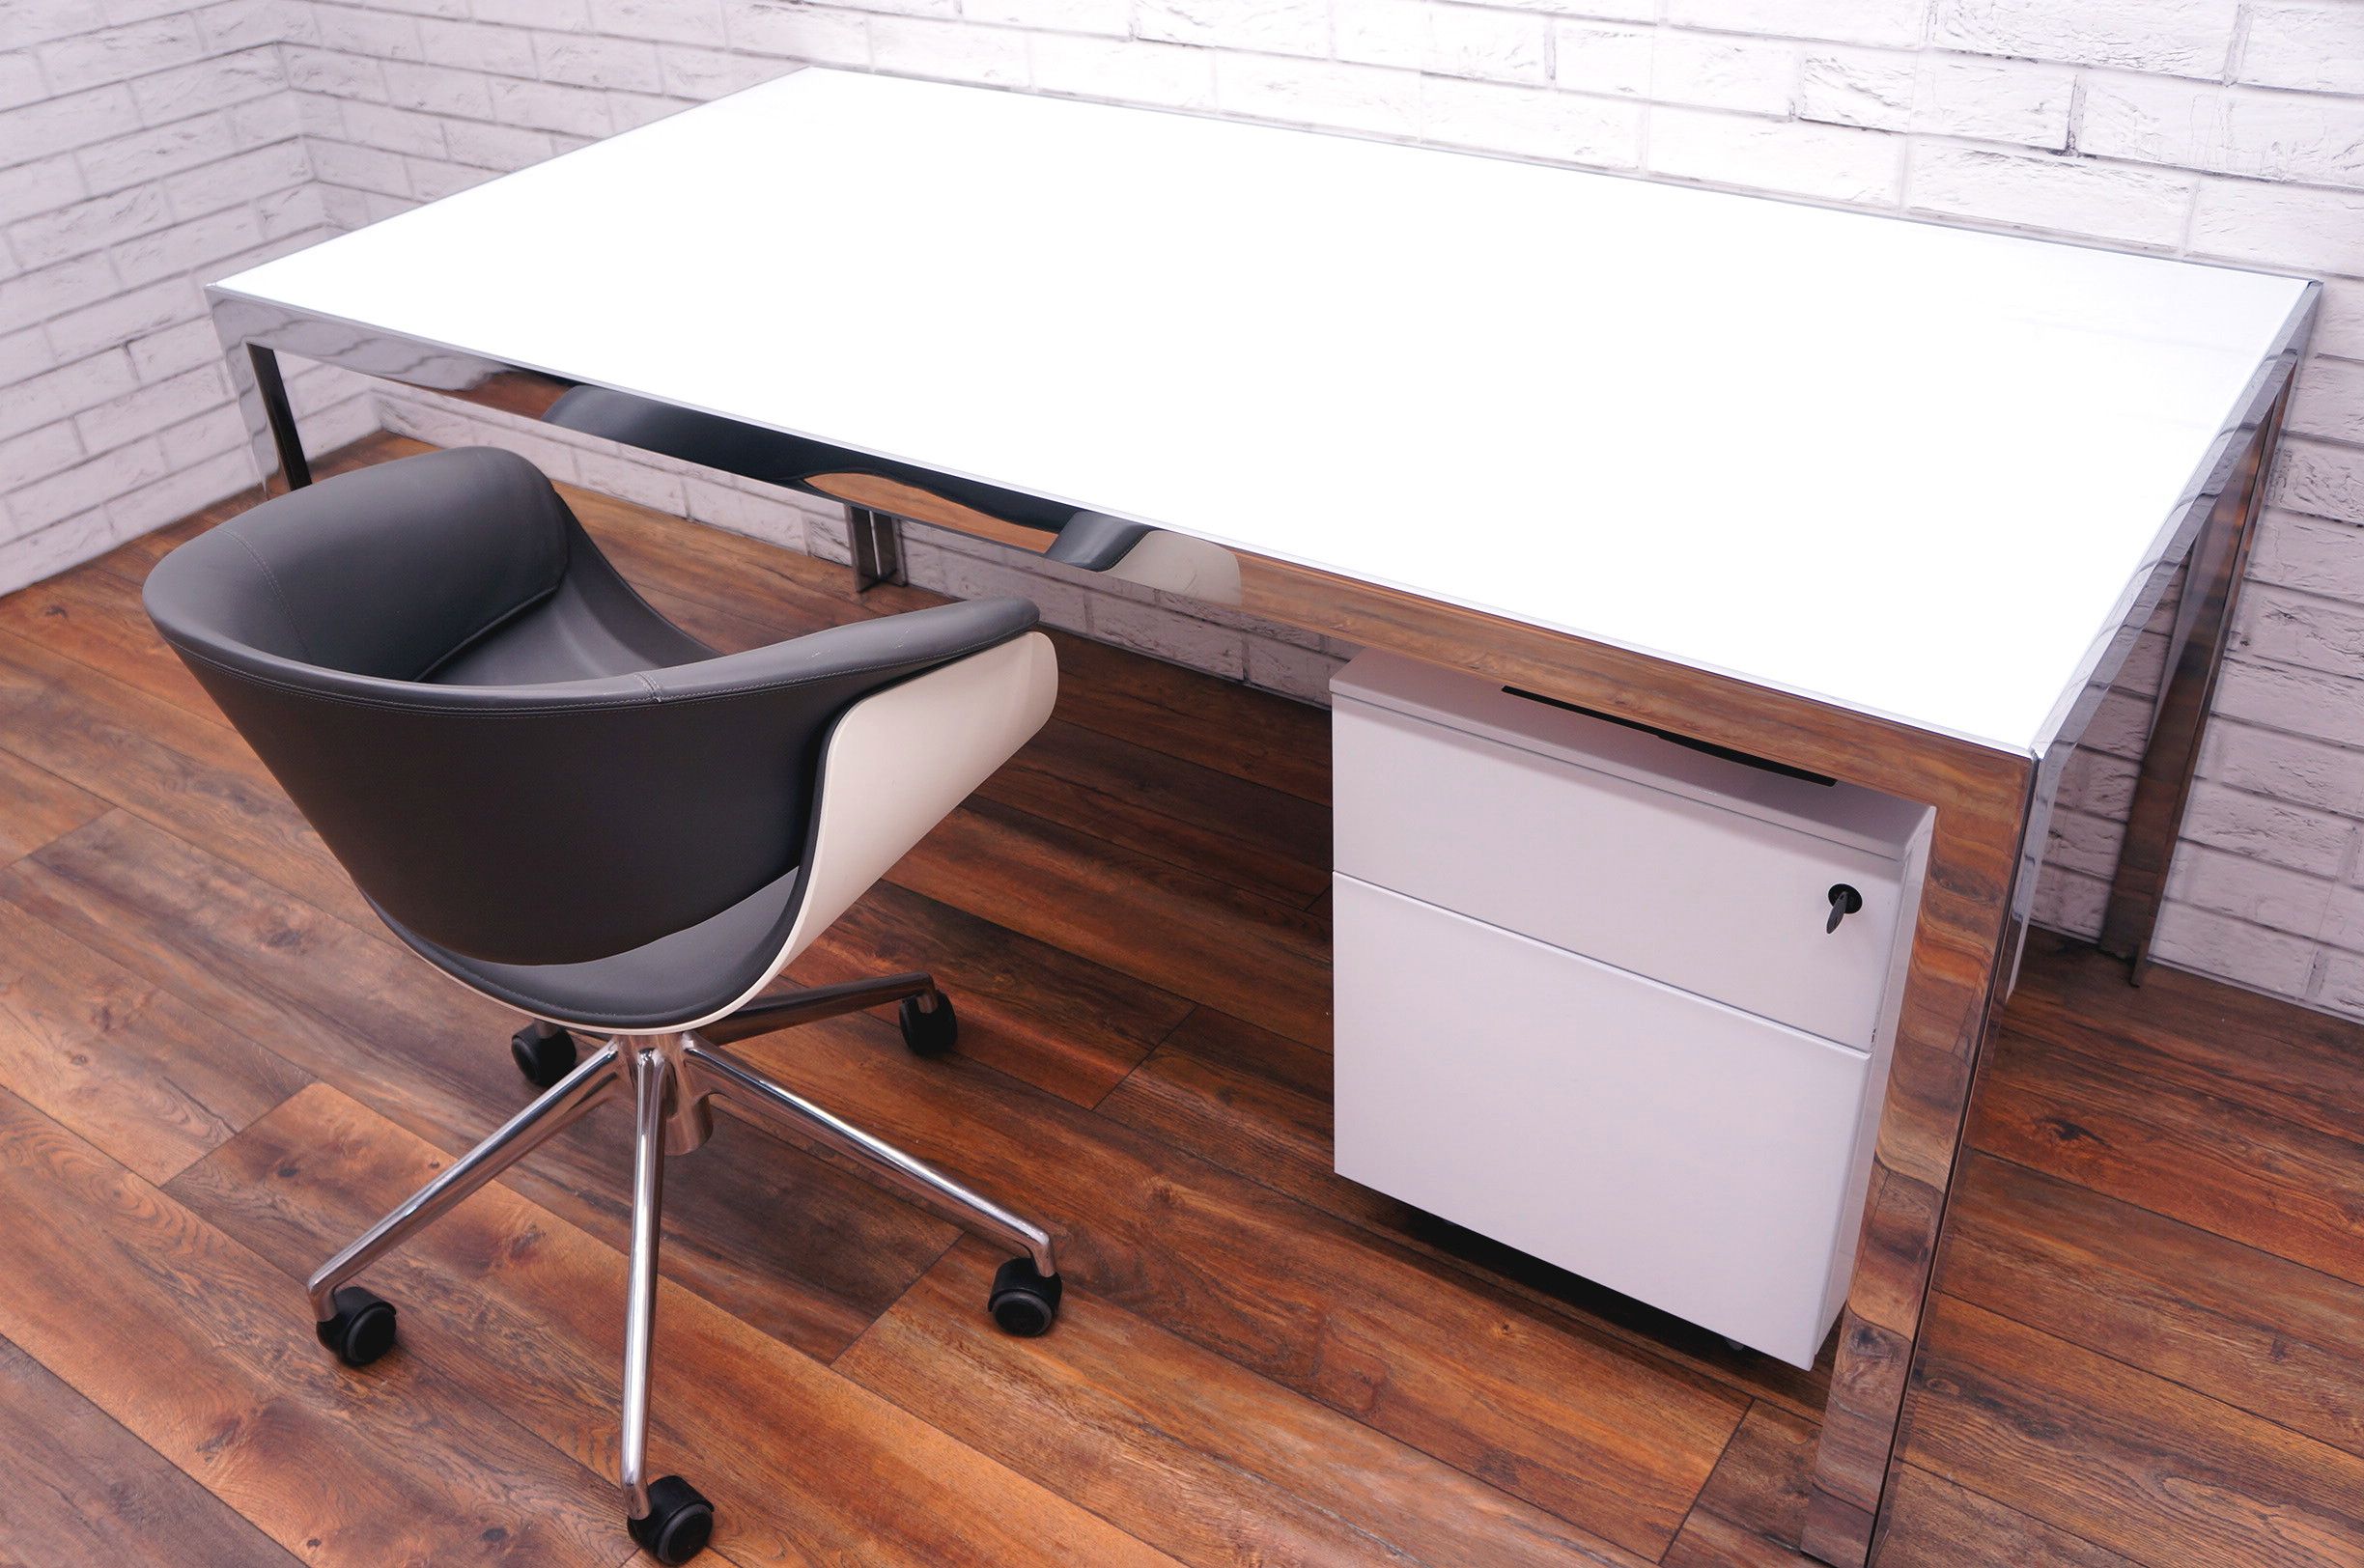 B&b Italia Progetto 1 White Glass Top Desk – Office Resale Regarding White Finish Glass Top Desks (View 1 of 15)